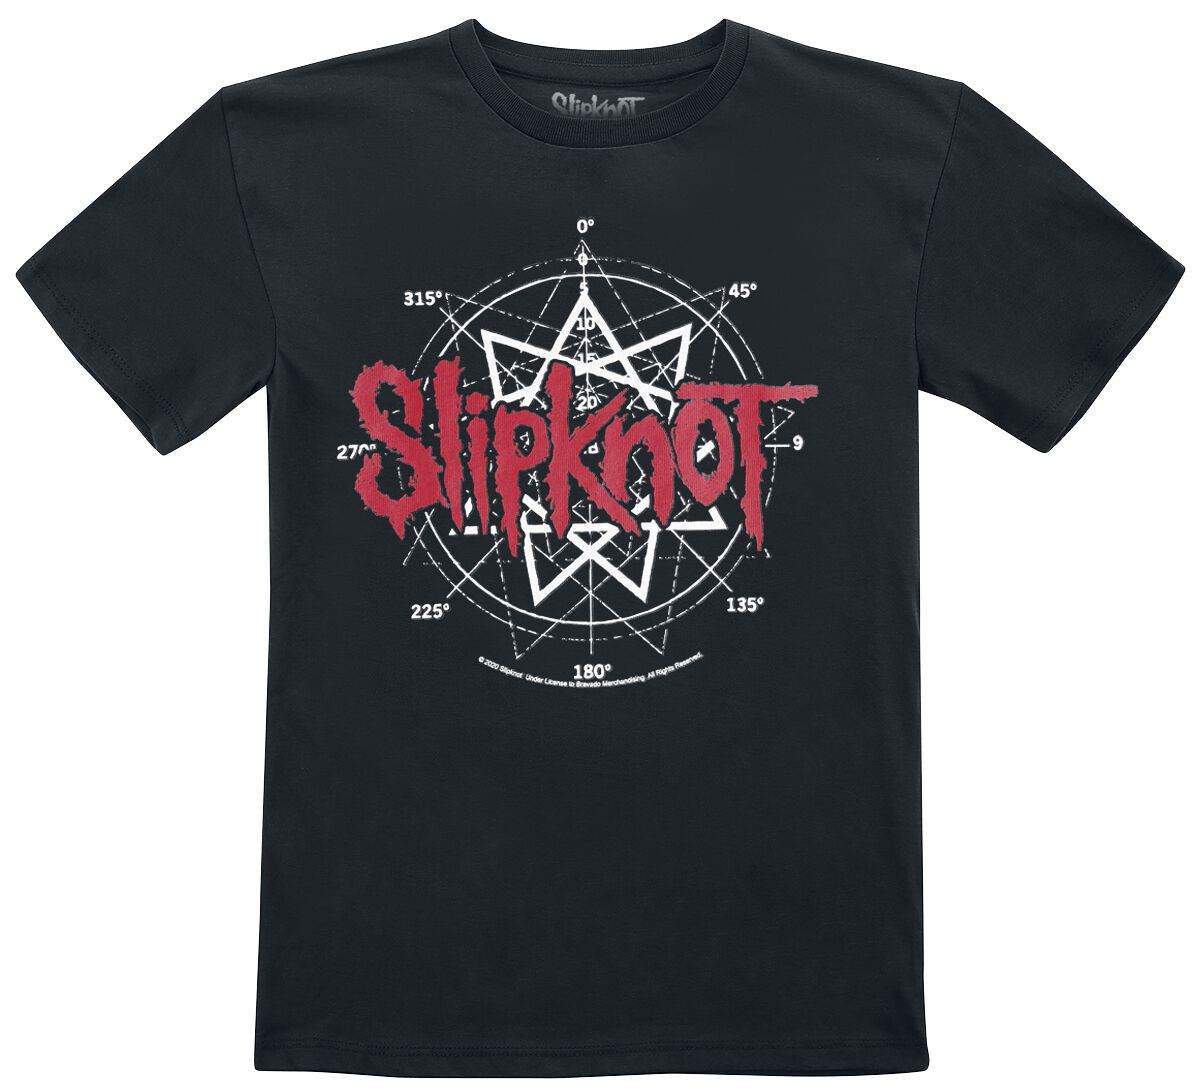 Slipknot T-Shirt für Kinder - Metal-Kids - Star Symbol - für Mädchen & Jungen - schwarz  - Lizenziertes Merchandise!